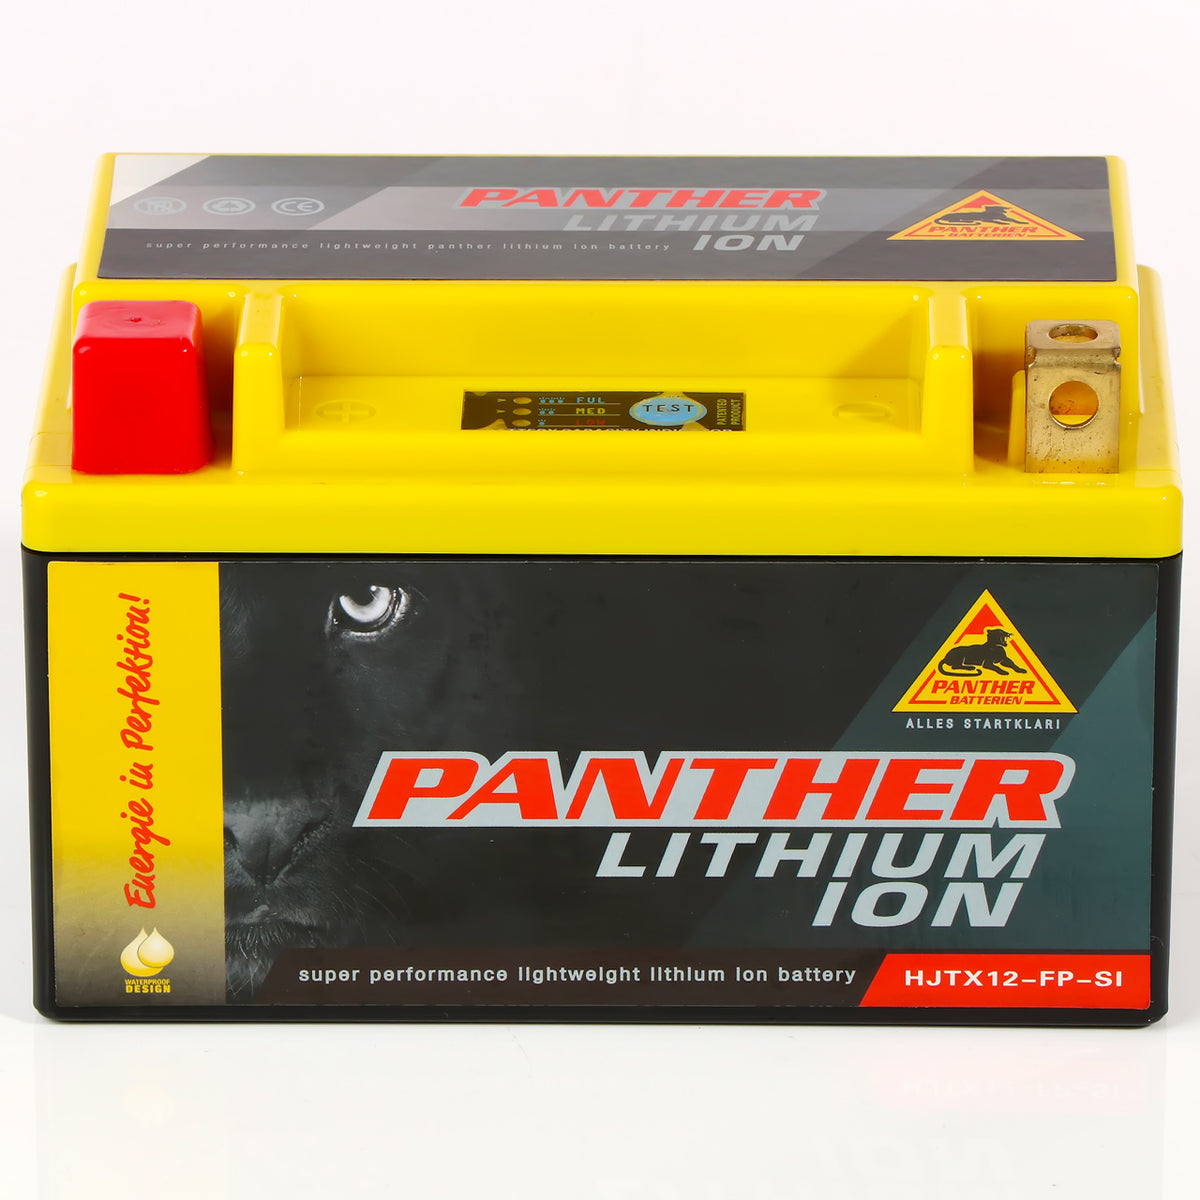 Panther Lithium Motorradbatterie 12V 4Ah HYTX12-FP